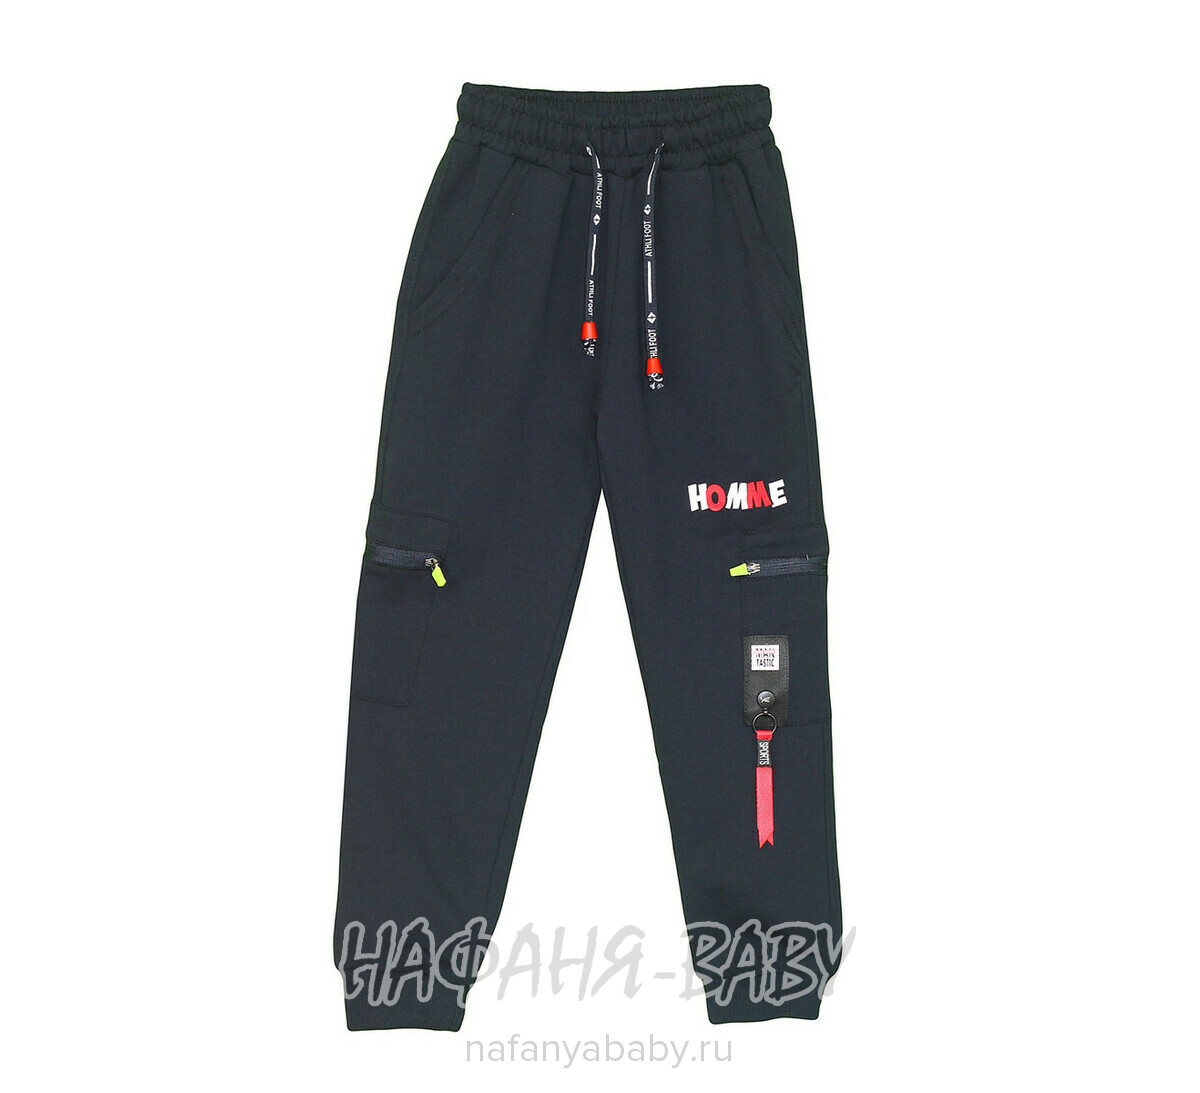 Детские брюки для мальчика MISIL, купить в интернет магазине Нафаня. арт: 0495 5-8.